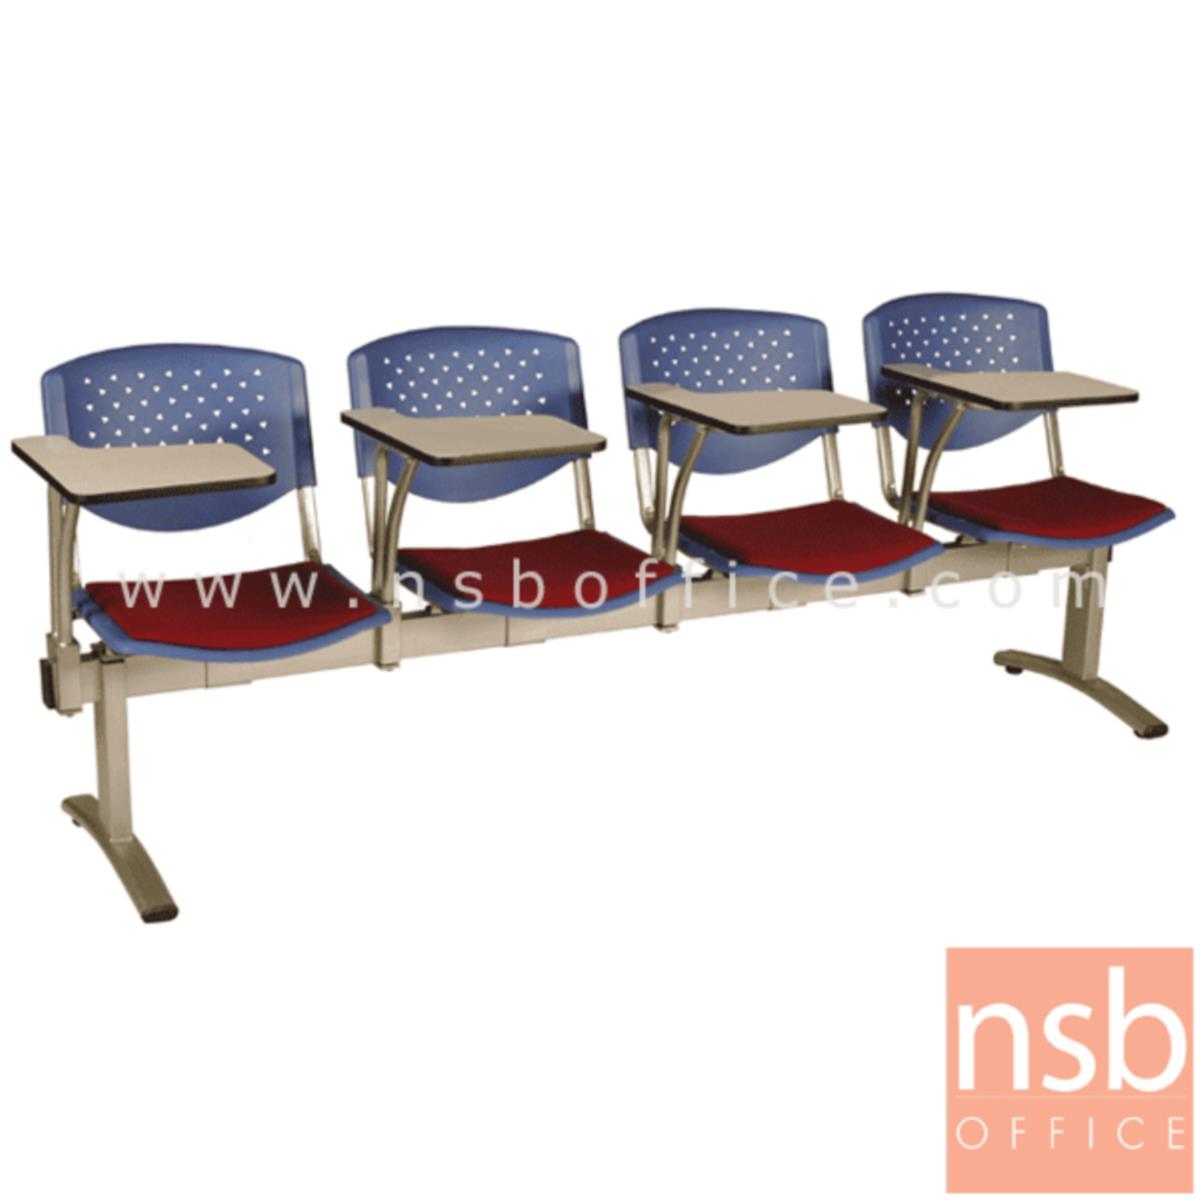 เก้าอี้เลคเชอร์แถวเฟรมโพลี่หุ้มเบาะ รุ่น D836 2 ,3 และ 4 ที่นั่ง ขาเหล็กพ่นสีเทา